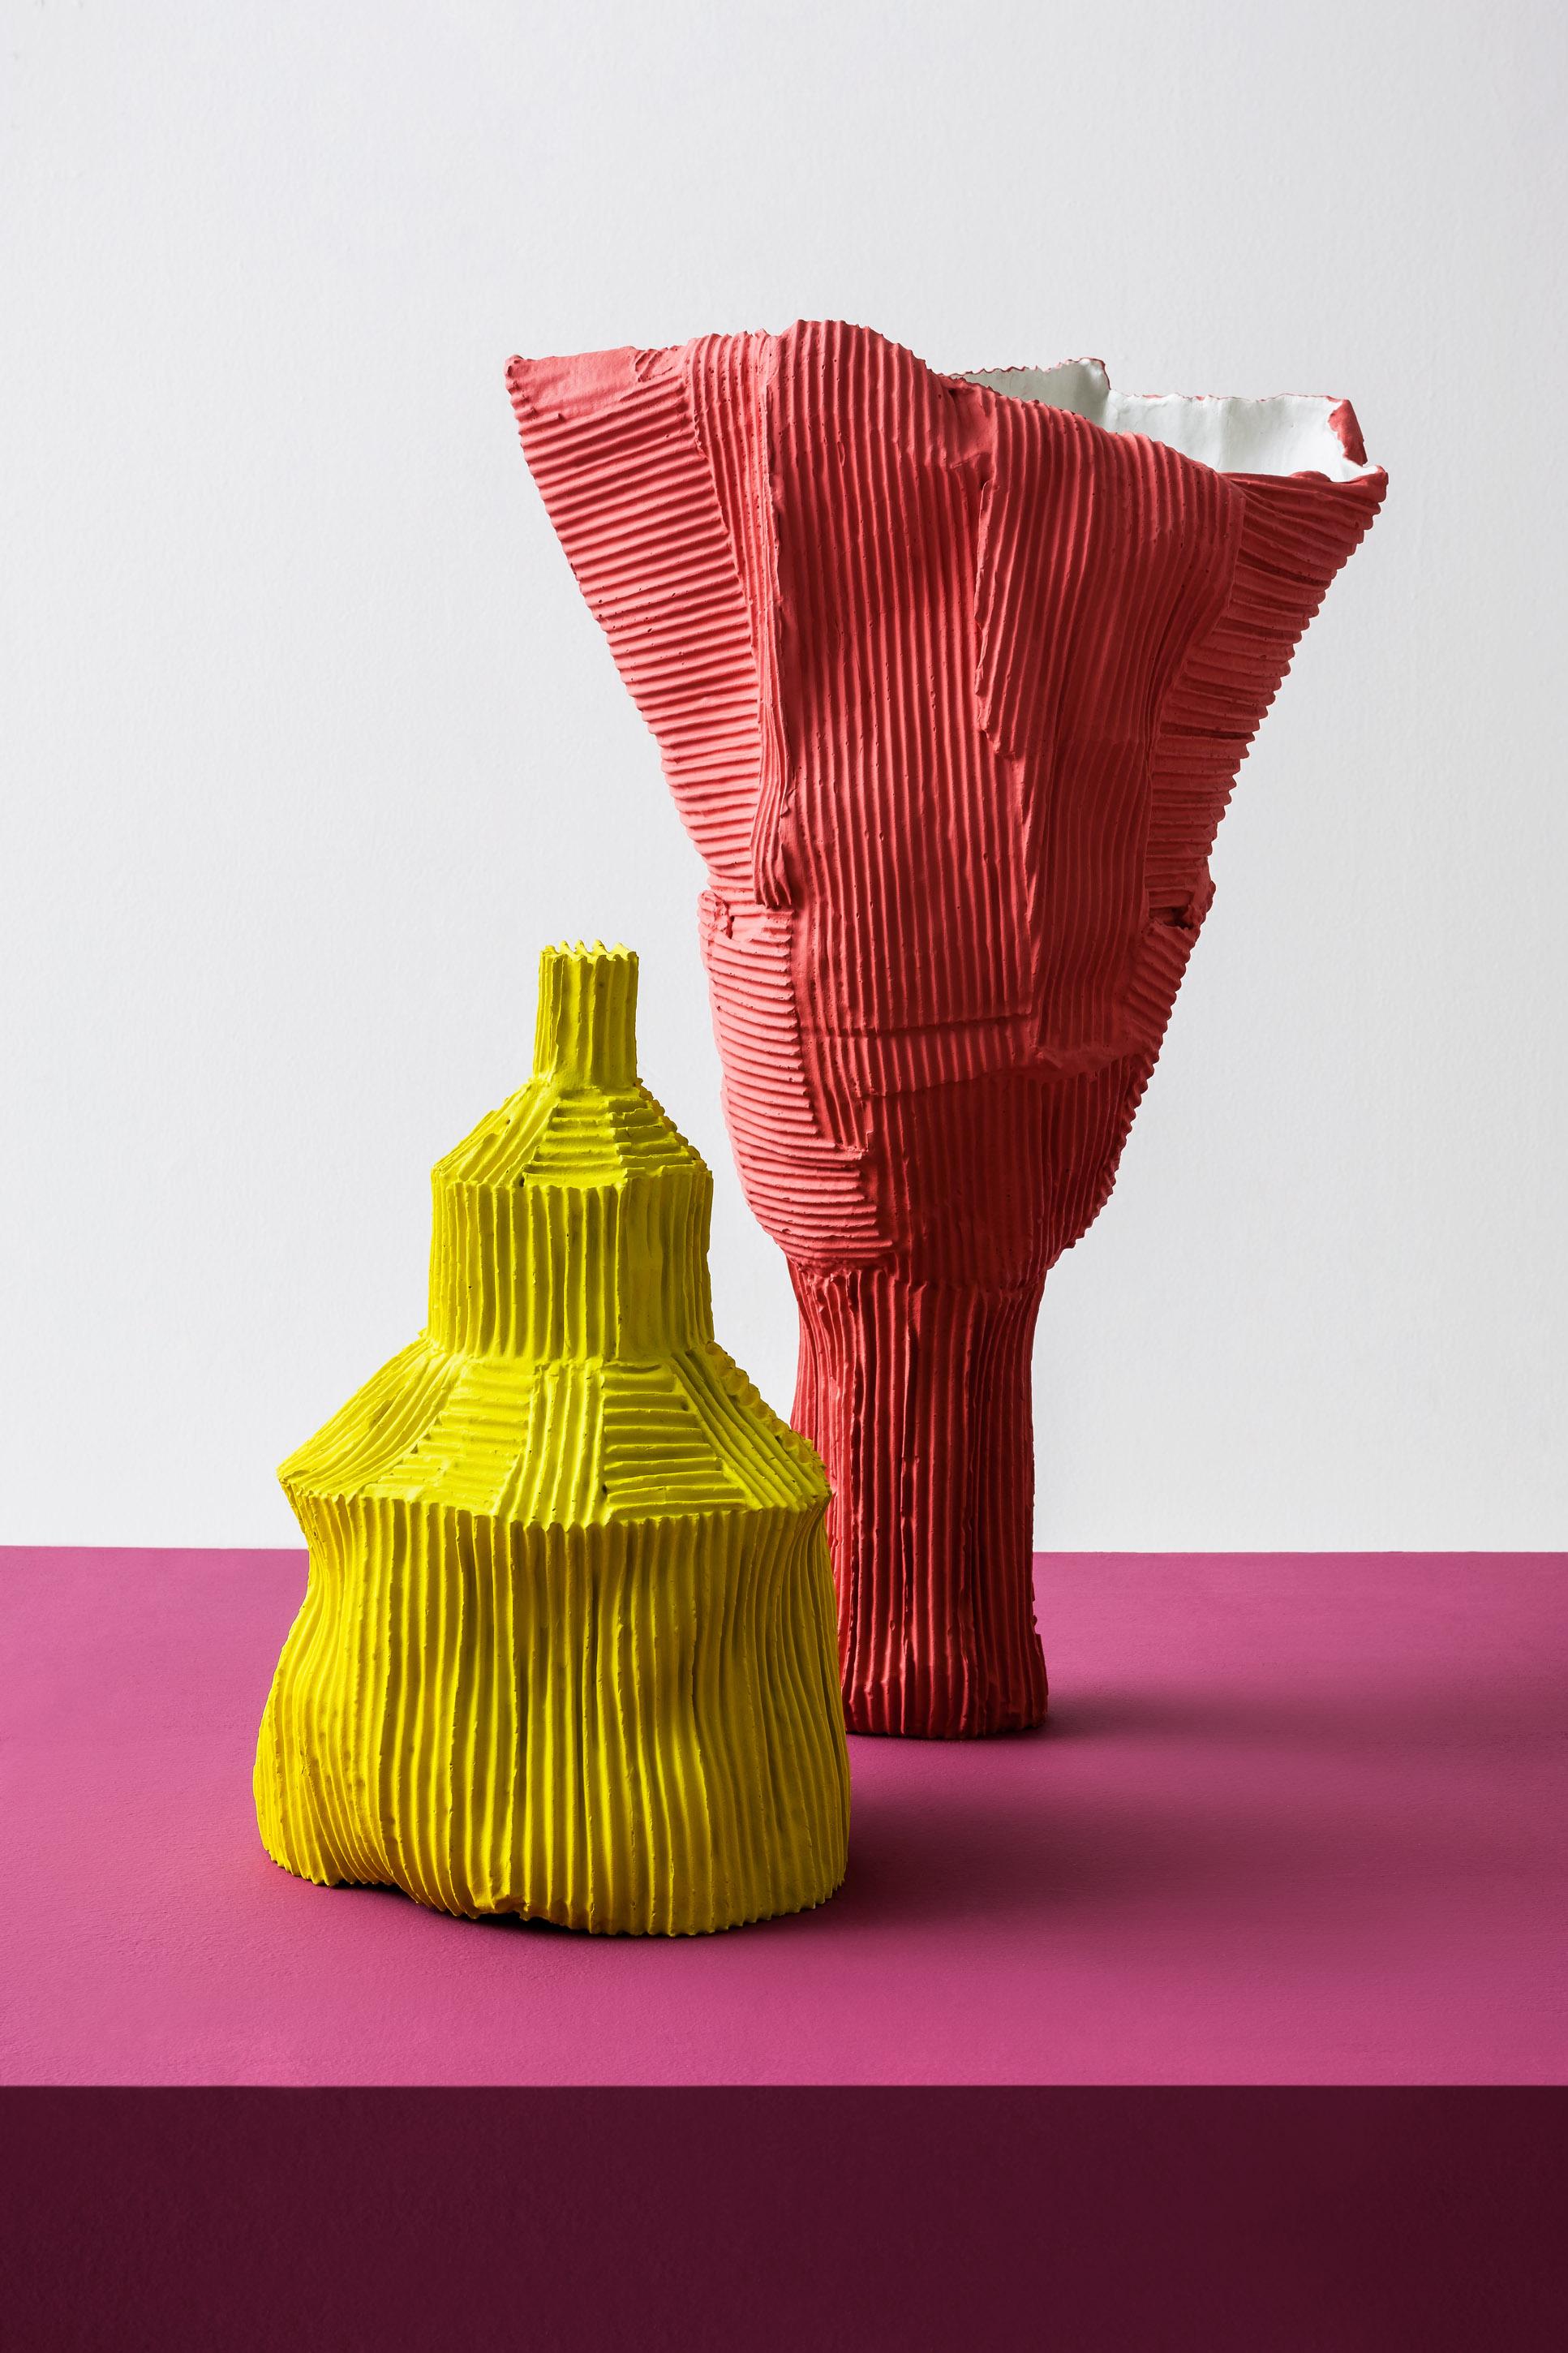 Fusionnant design moderne et sensibilité artistique innovante, ce vase est un exercice audacieux d'équilibre et d'harmonie visuelle. Façonnée par l'artiste Paola Paronetto à l'aide de sa signature, la pâte à papier (combinaison de pâte à papier, de